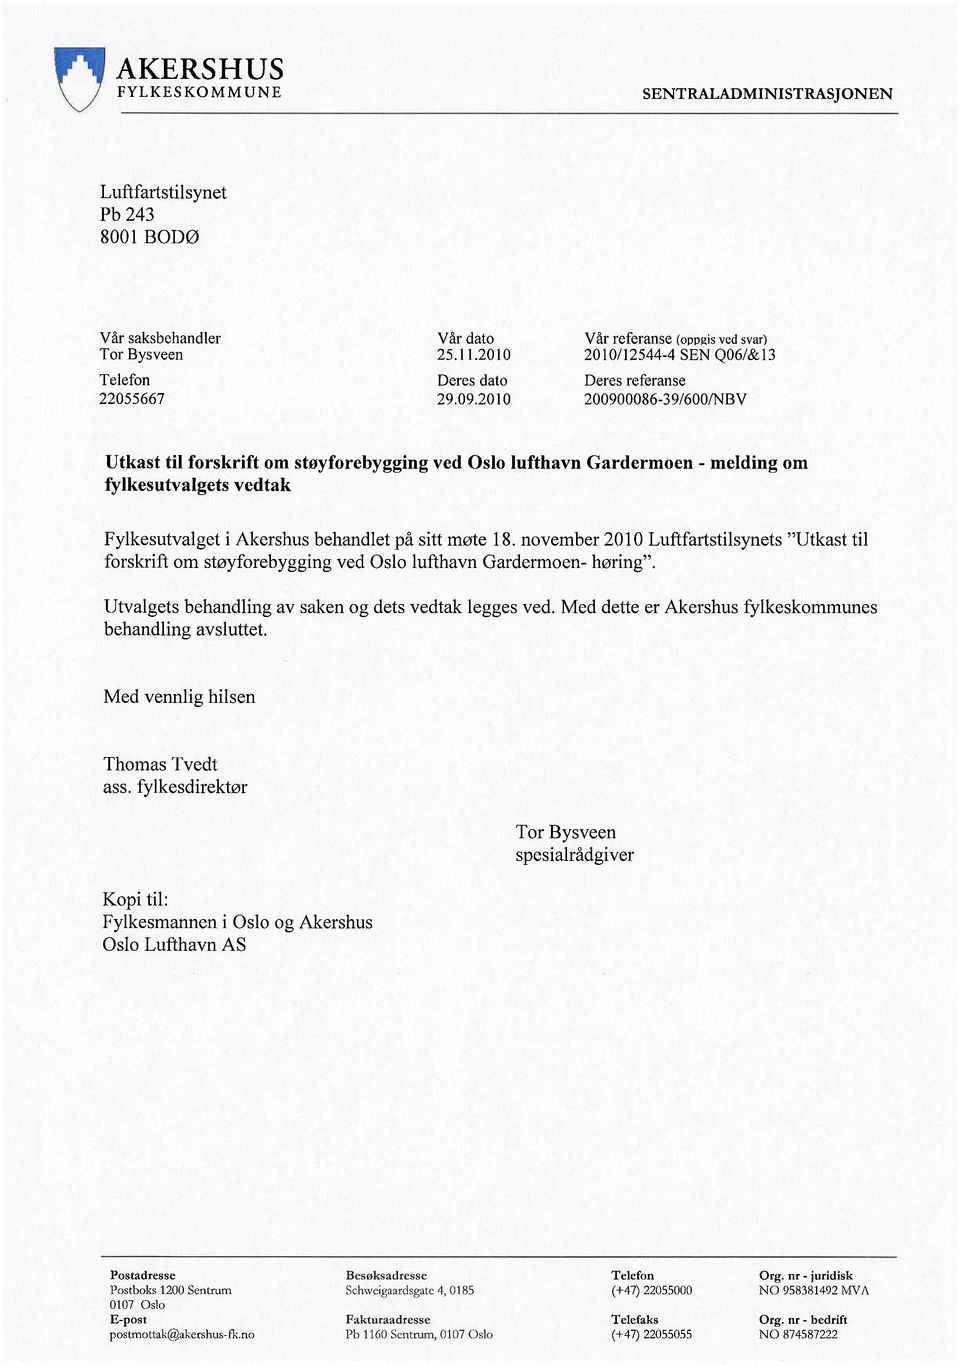 vedtak Fylkesutvalget i Akershus behandlet på sitt møte 18. november 2010 Luftfartstilsynets "Utkast til forskrift om støyforebygging ved Oslo lufthavn Gardermoen- høring".